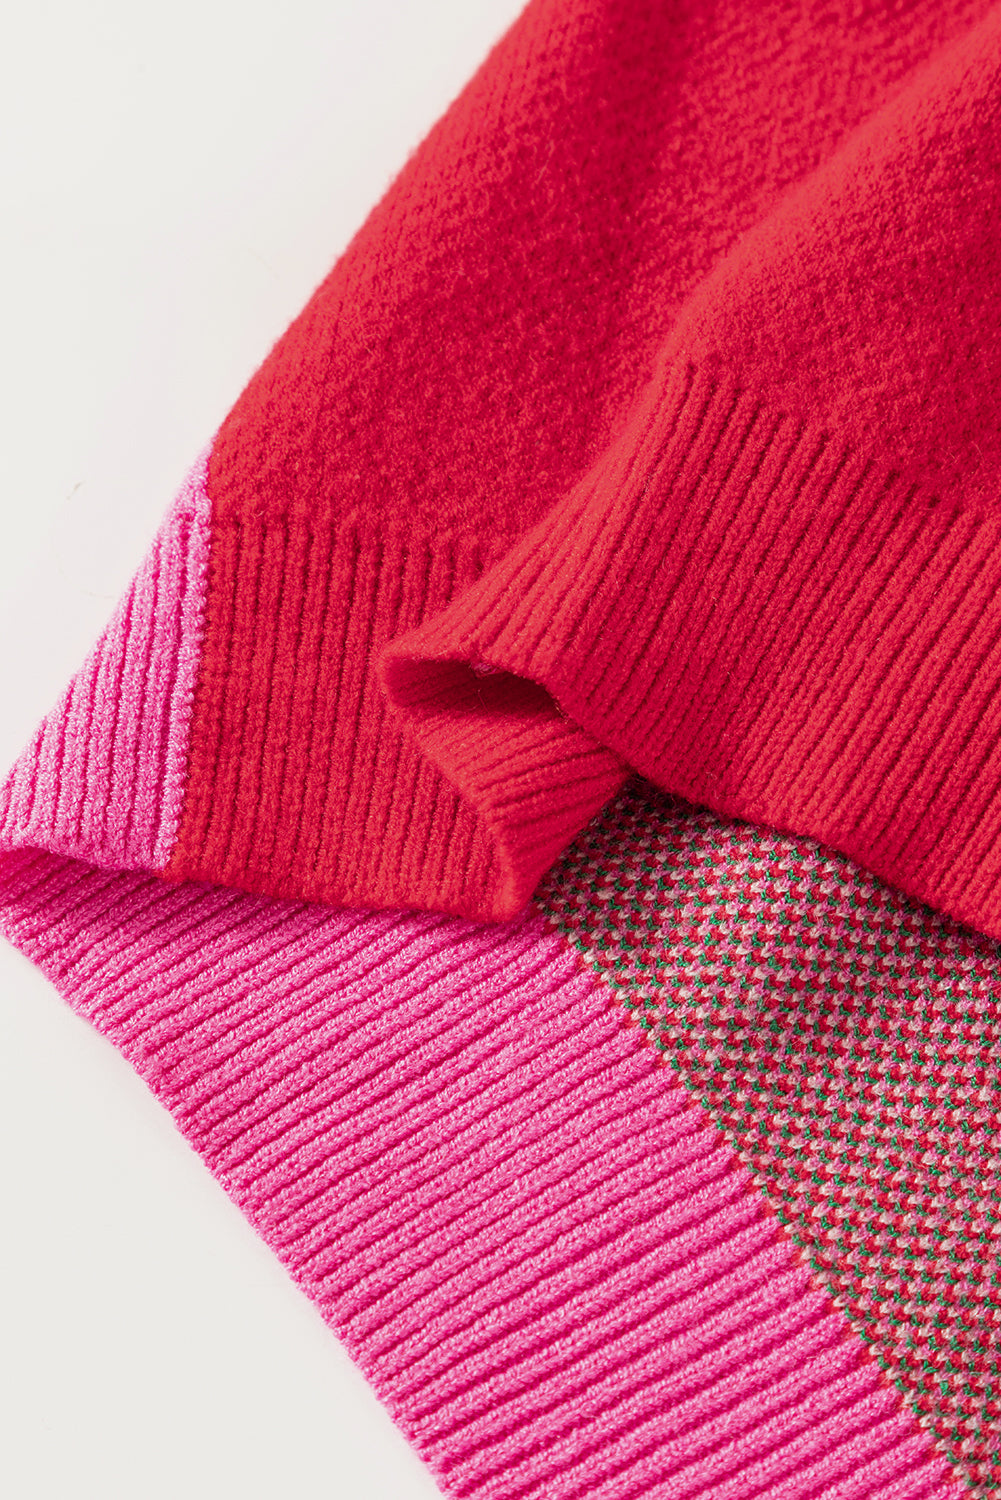 Maglione a blocchi di colore misto floreale rosso rosa